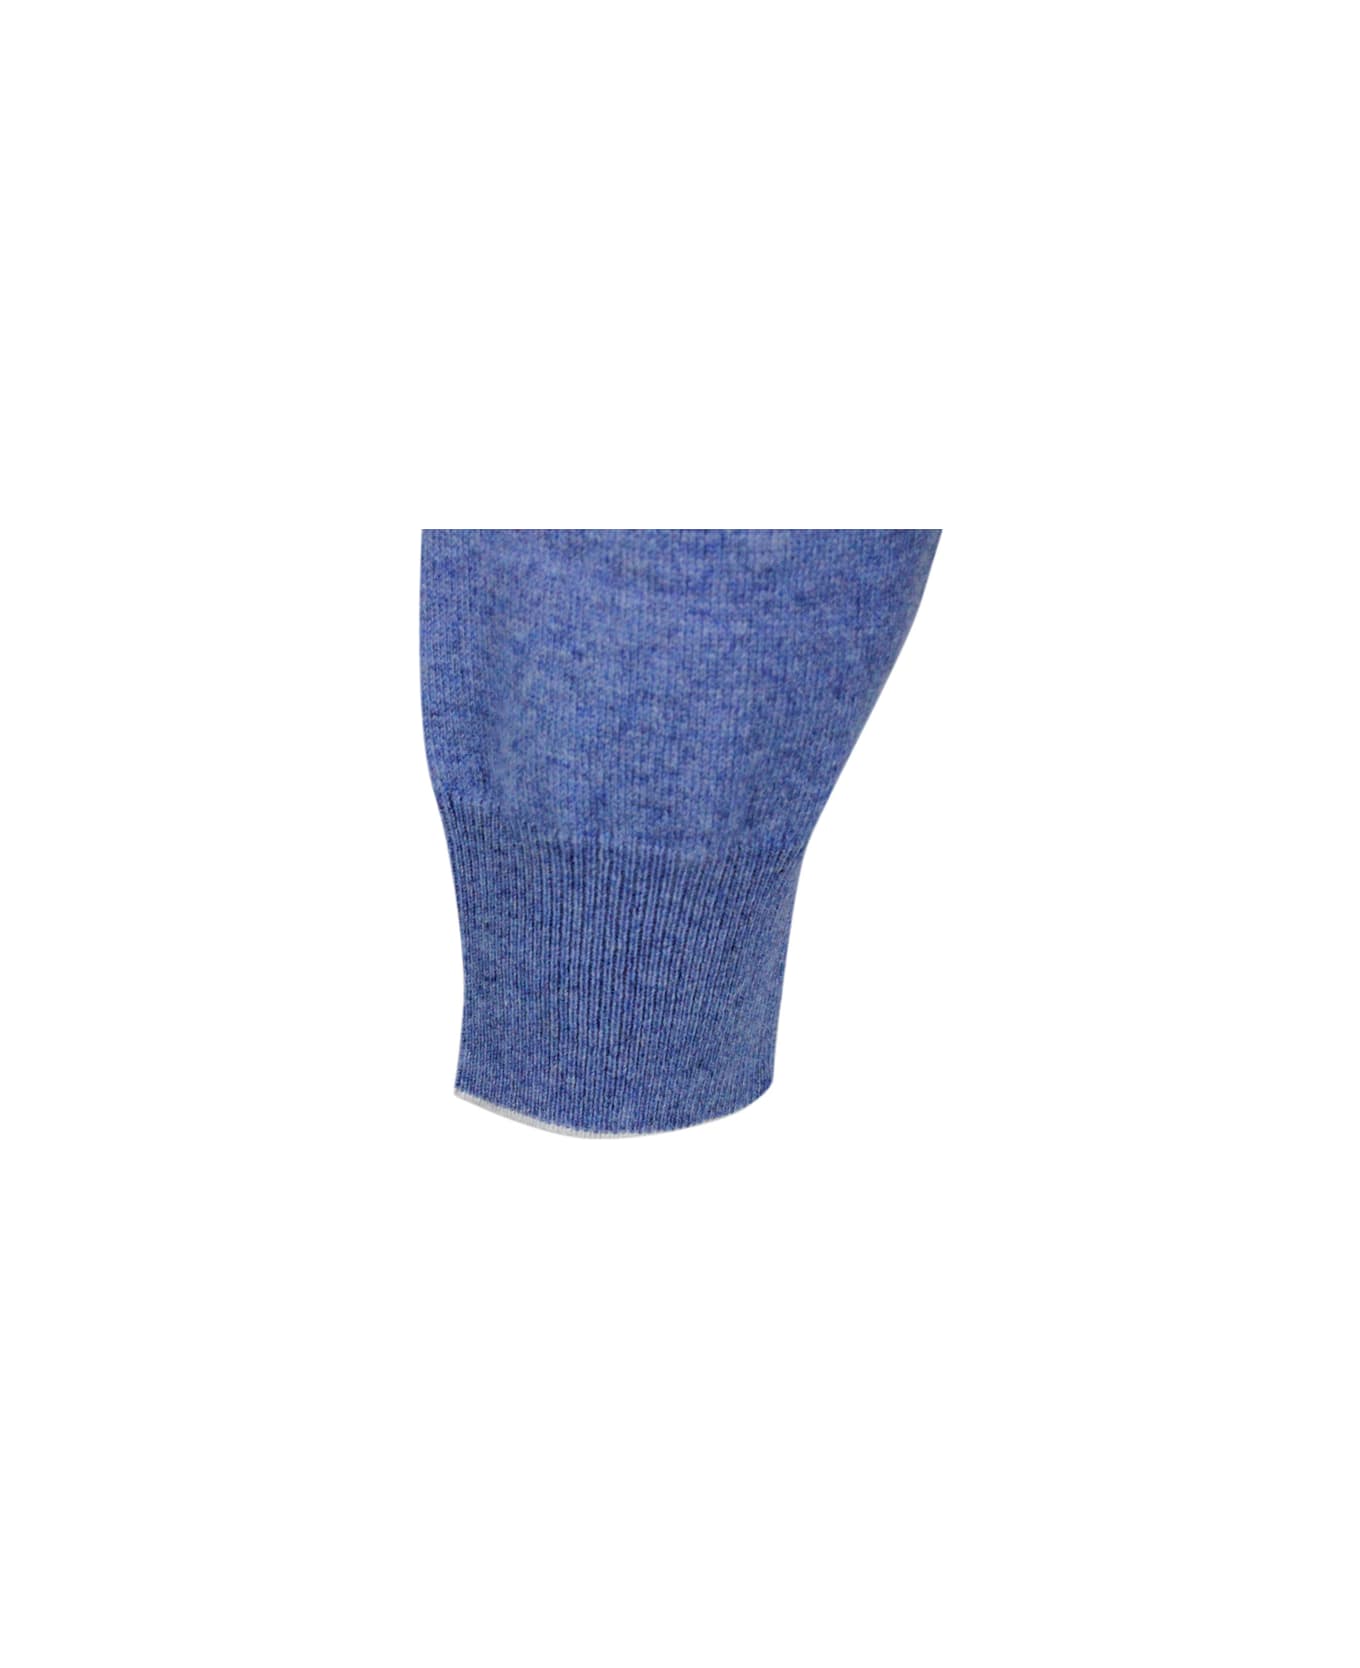 Brunello Cucinelli Long-sleeved Crew-neck Sweater - Light Blu Melange ニットウェア